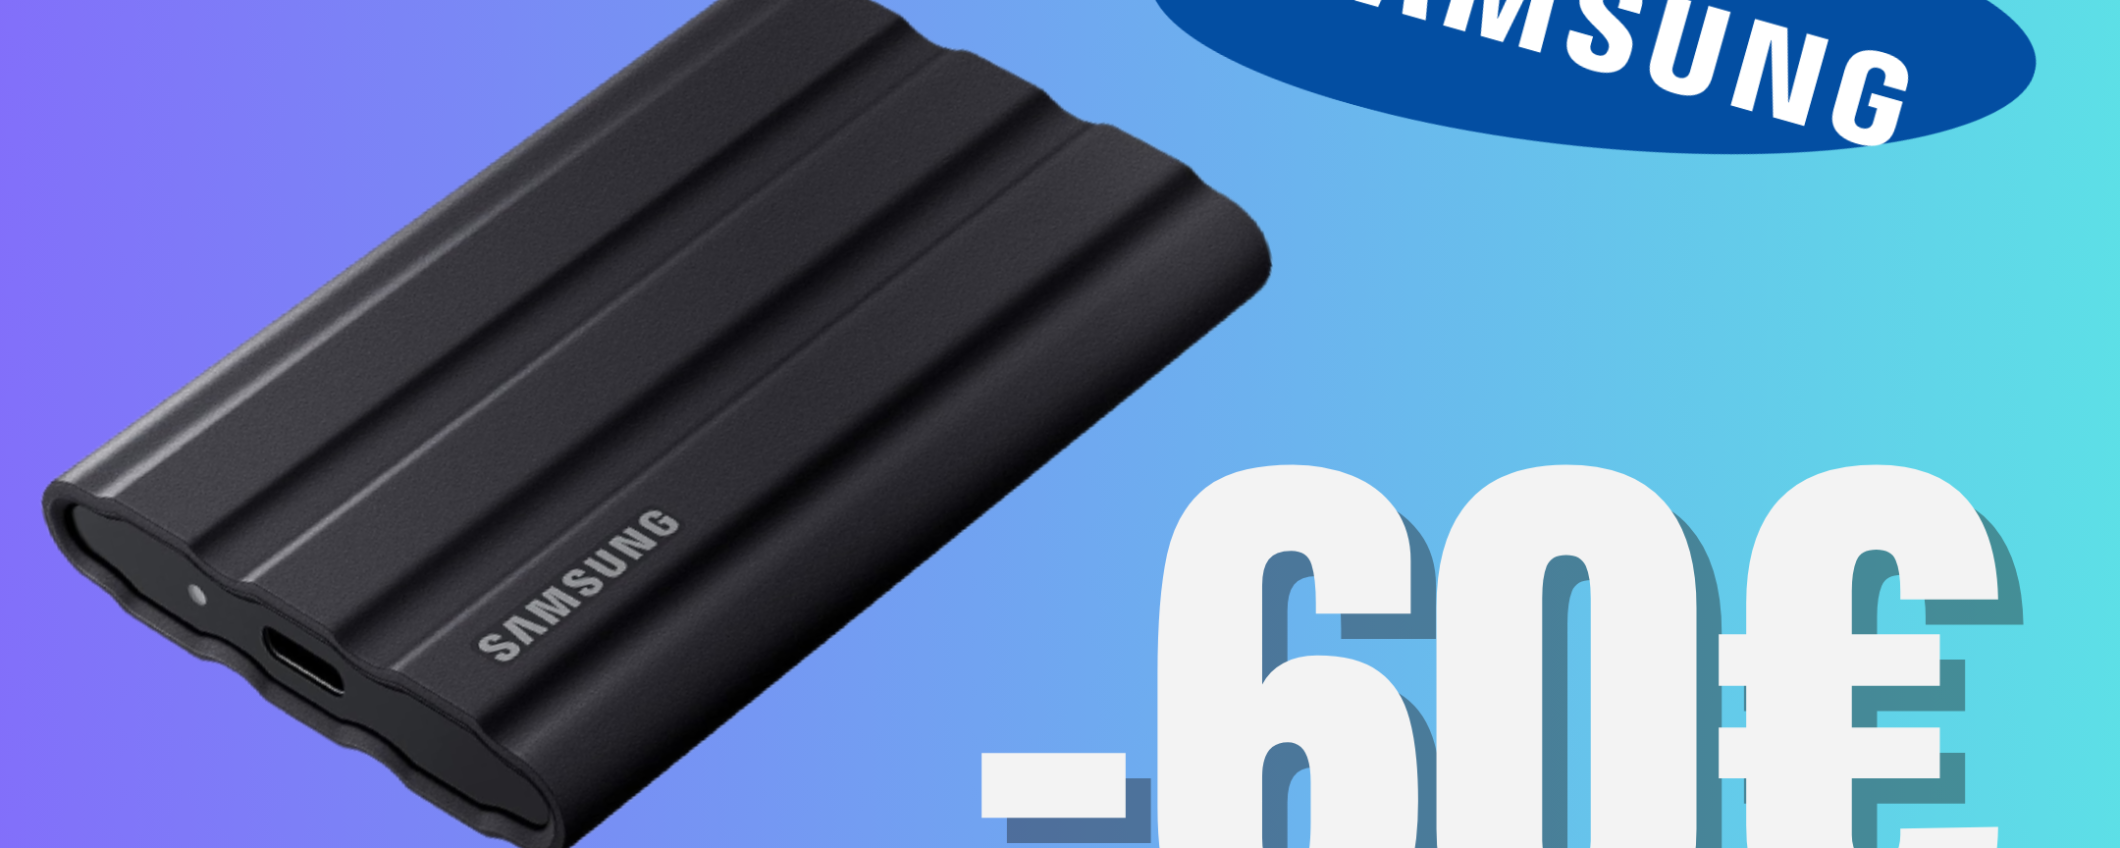 Archiviazione infinita grazie all'SSD indistruttibile di Samsung, ora in SCONTO (-60€)